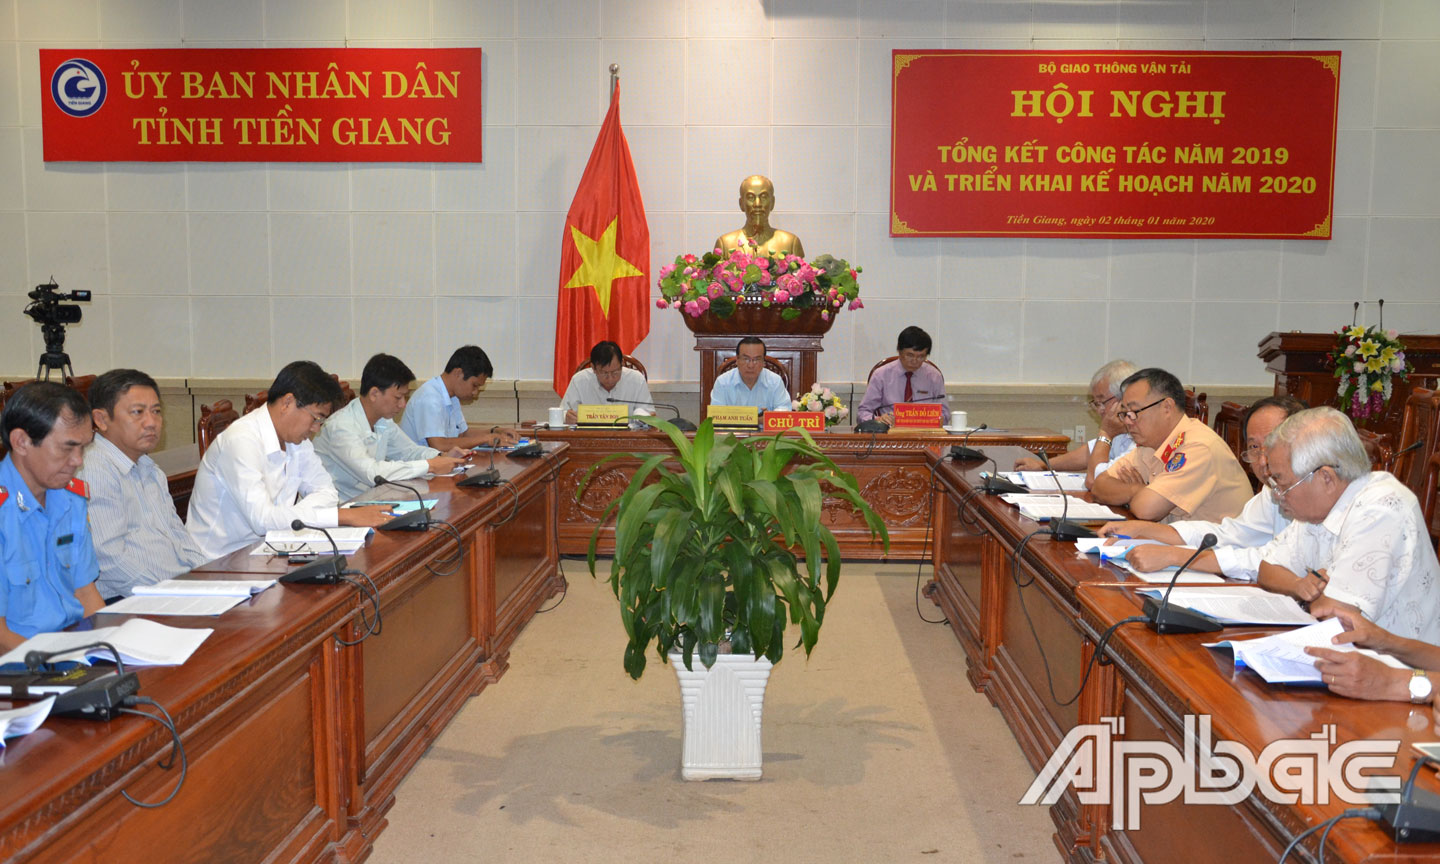 Quang cảnh hội nghị tại điểm cầu Tiền Giang.